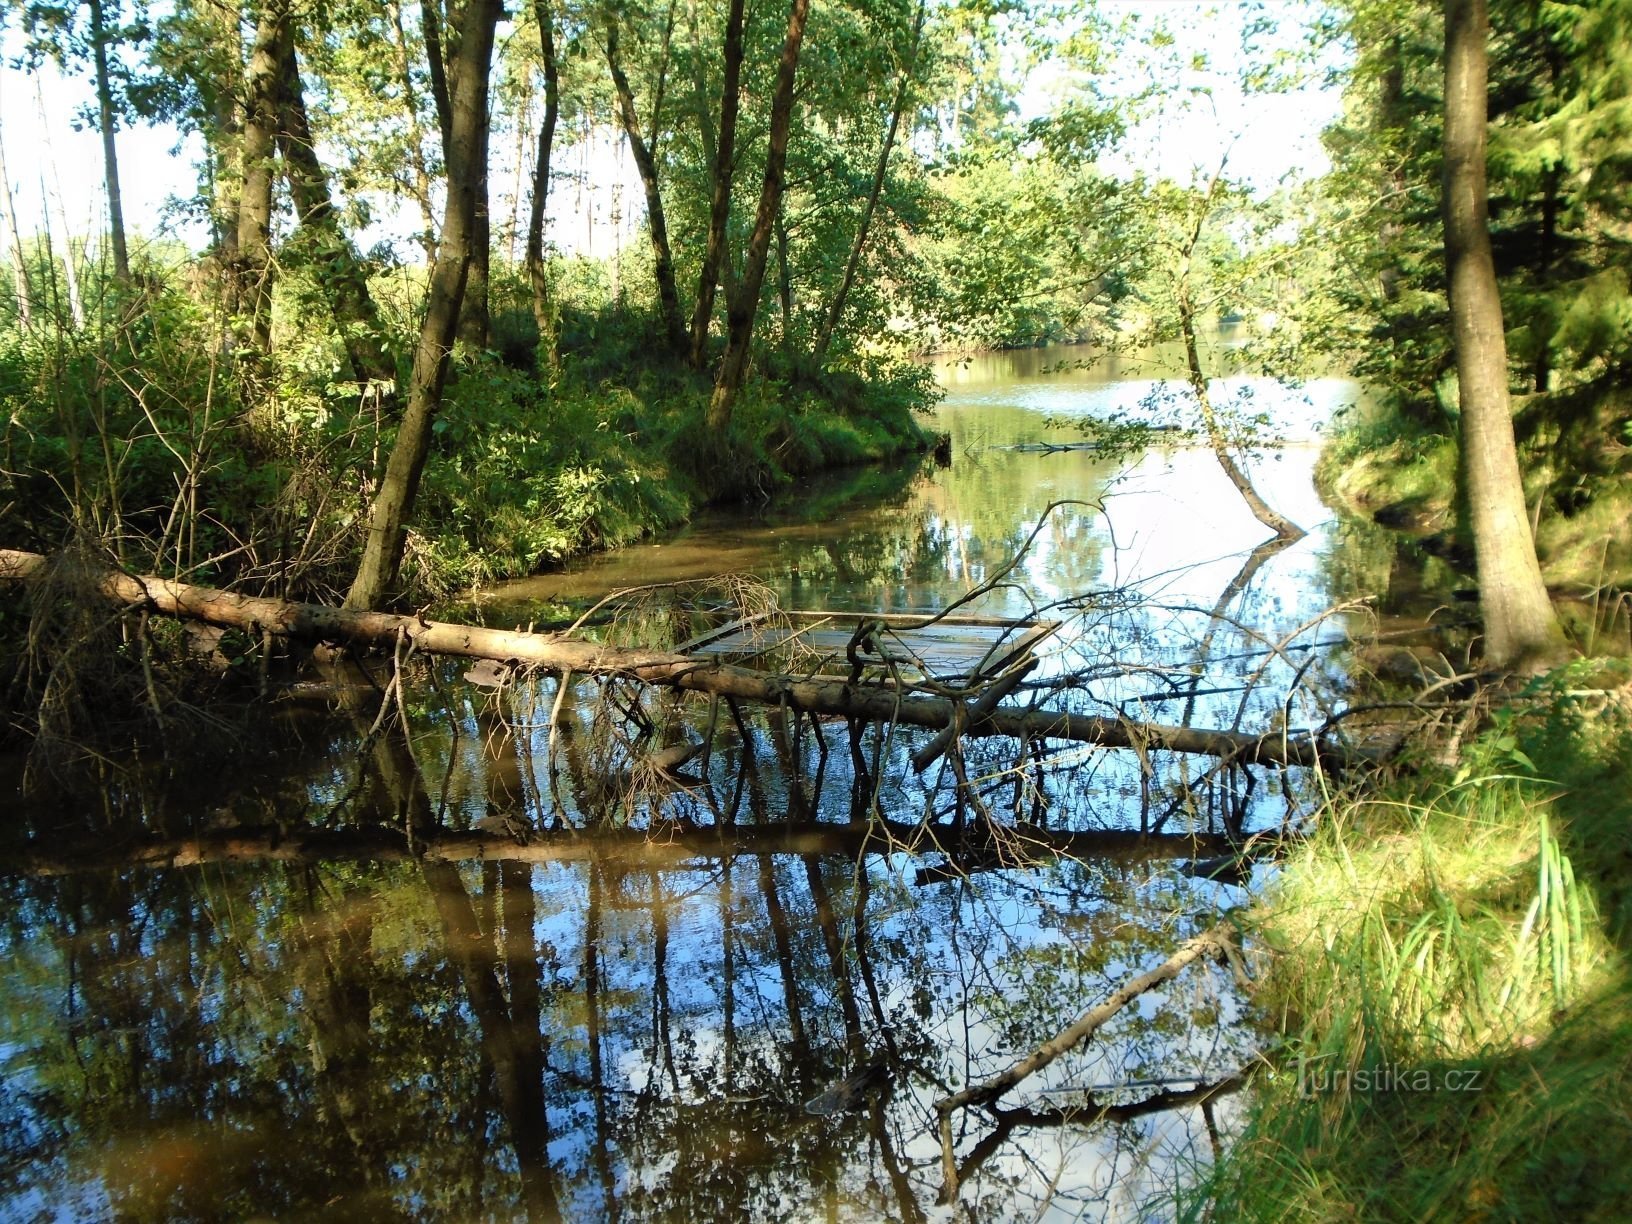 Εισροή του ρέματος Šanovce στην ομώνυμη λίμνη (Běleč nad Orlicí, 3.9.2020 Σεπτεμβρίου XNUMX)